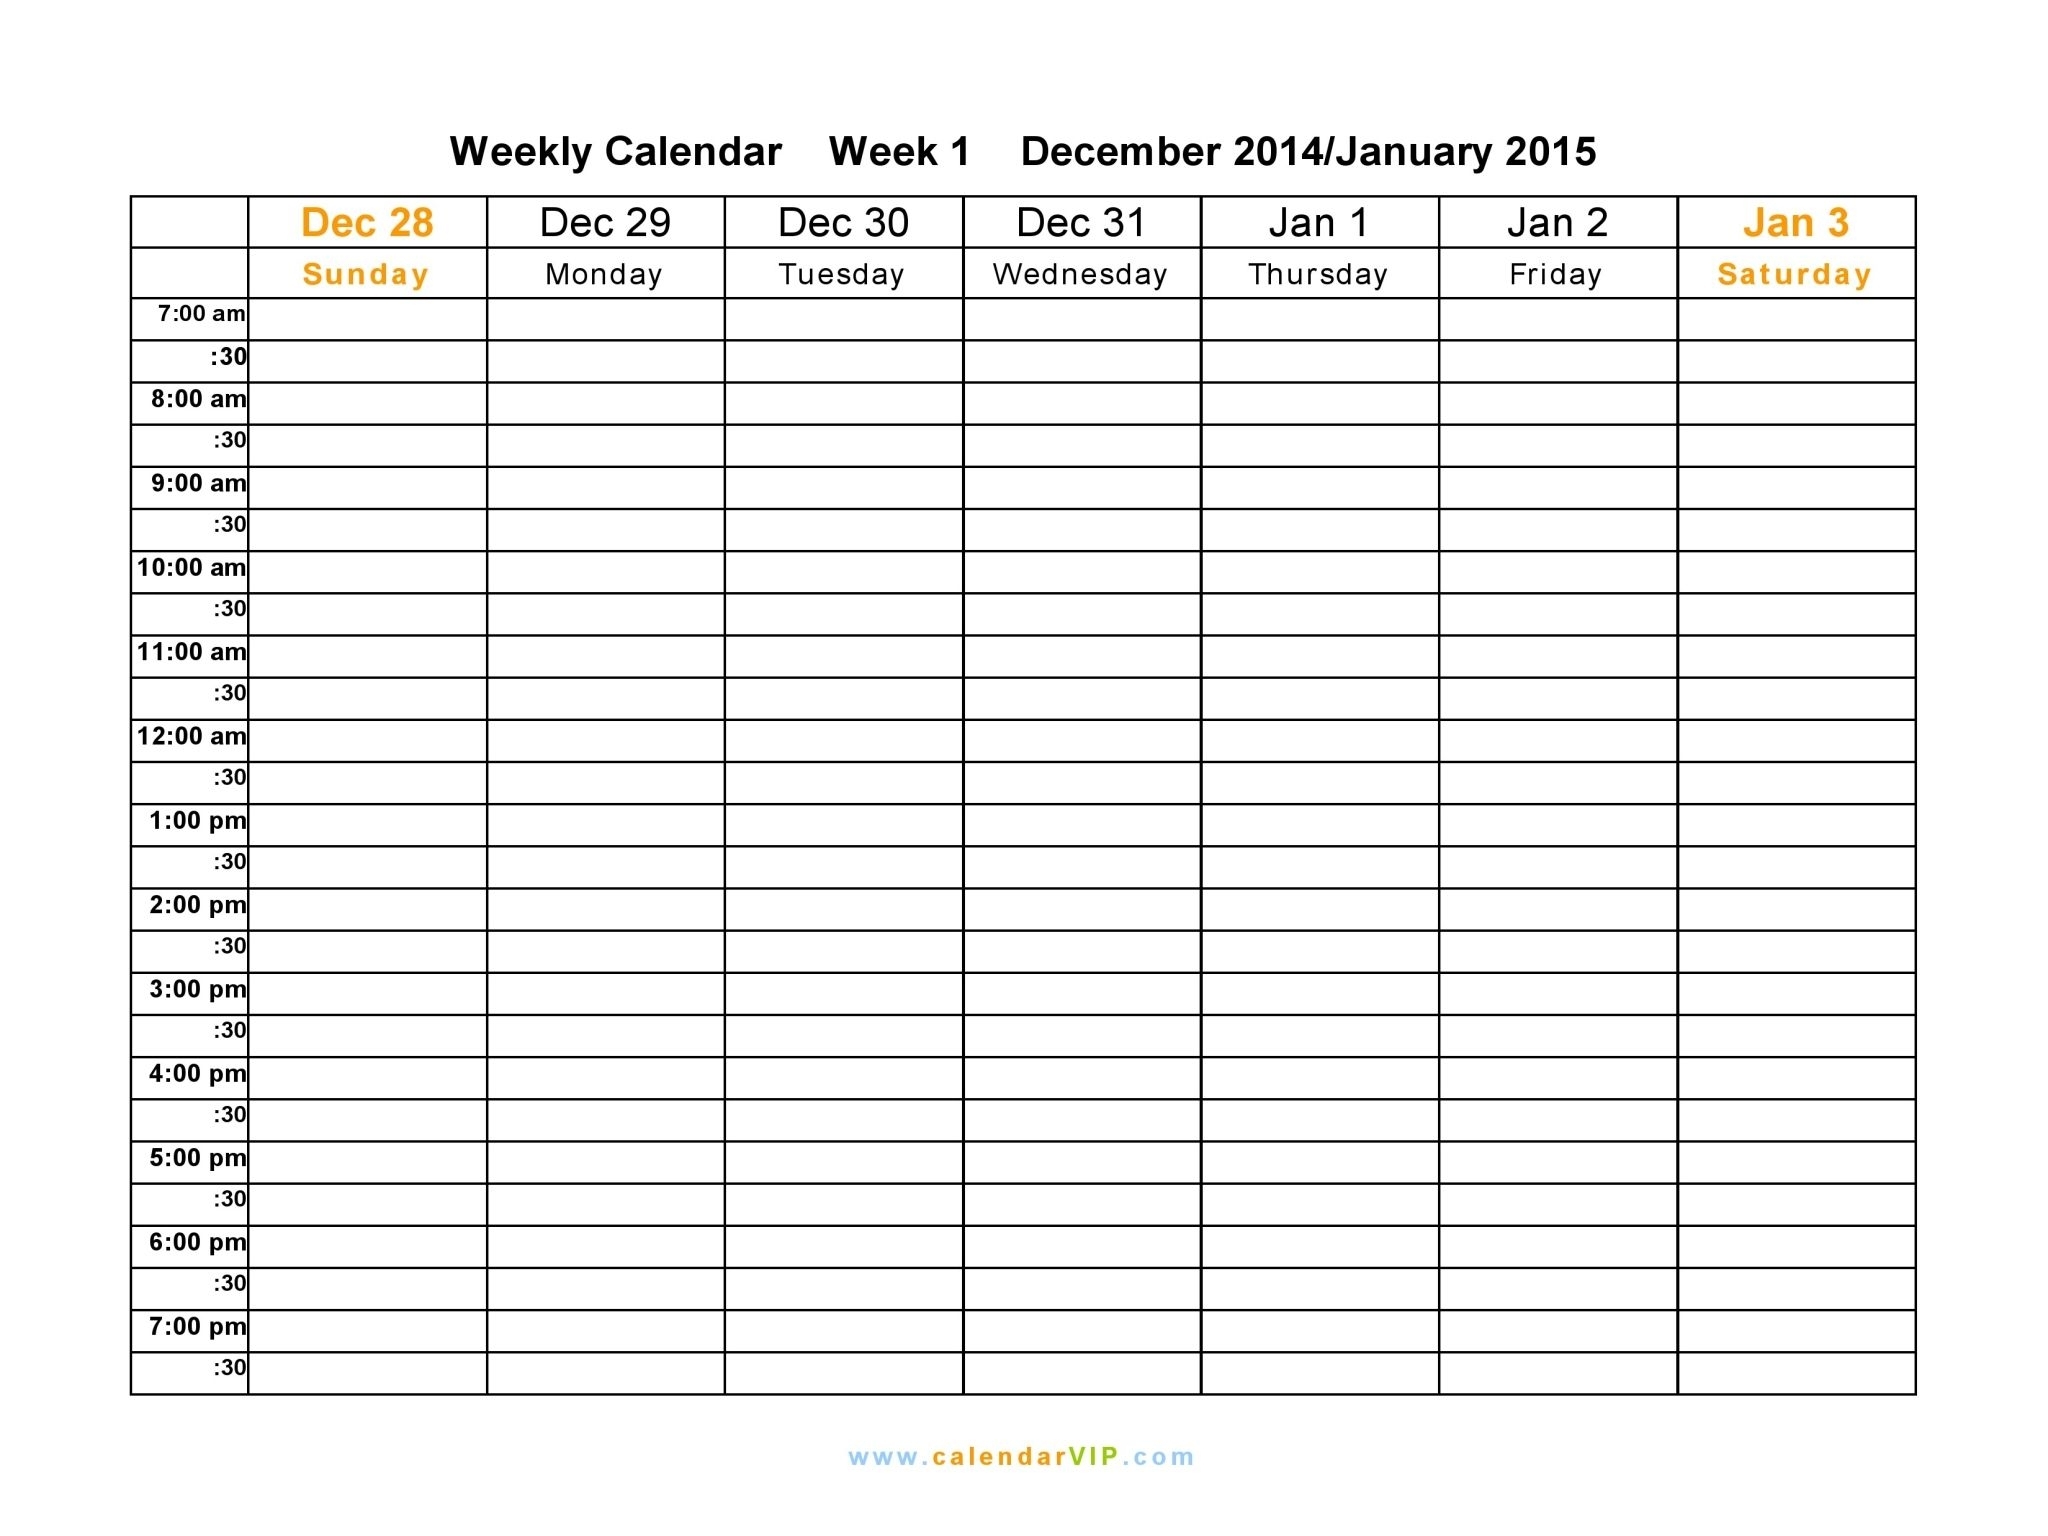 Schedule Template Printable Weekly Planner Free Calendar Templates throughout Printable Weekly Planner Calendar Template